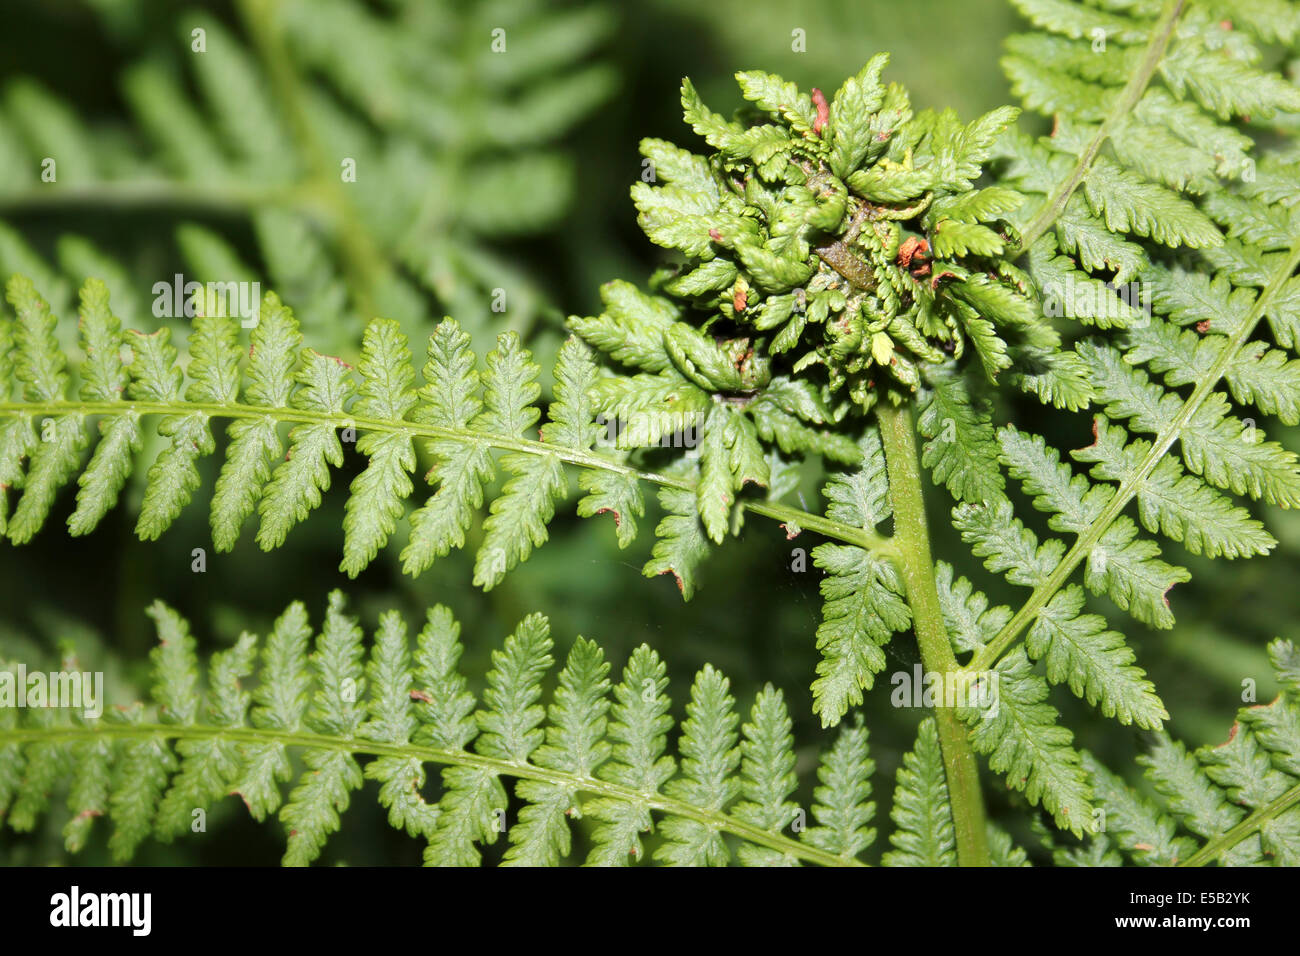 Gall di annodatura sul maschio-fern Dryopteris filix-mas fronde causato dalla Dipteron Gall Fly Chirosia betuleti Foto Stock